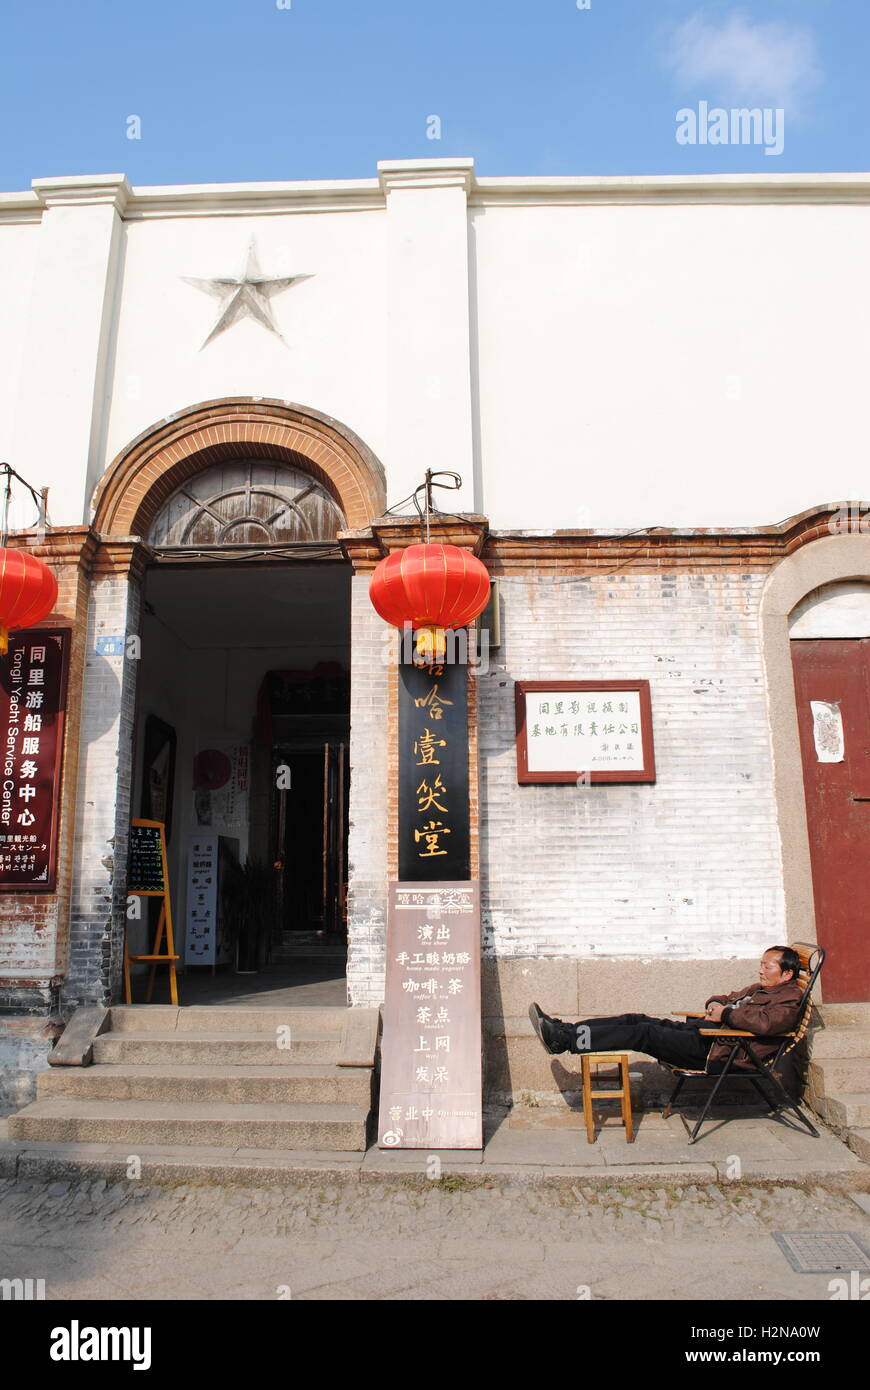 Un uomo cinese prende un pisolino fuori l'ingresso ad un funzionario cercando edificio in Tongli, una città d'acqua in Jiangsu, Cina. Foto Stock